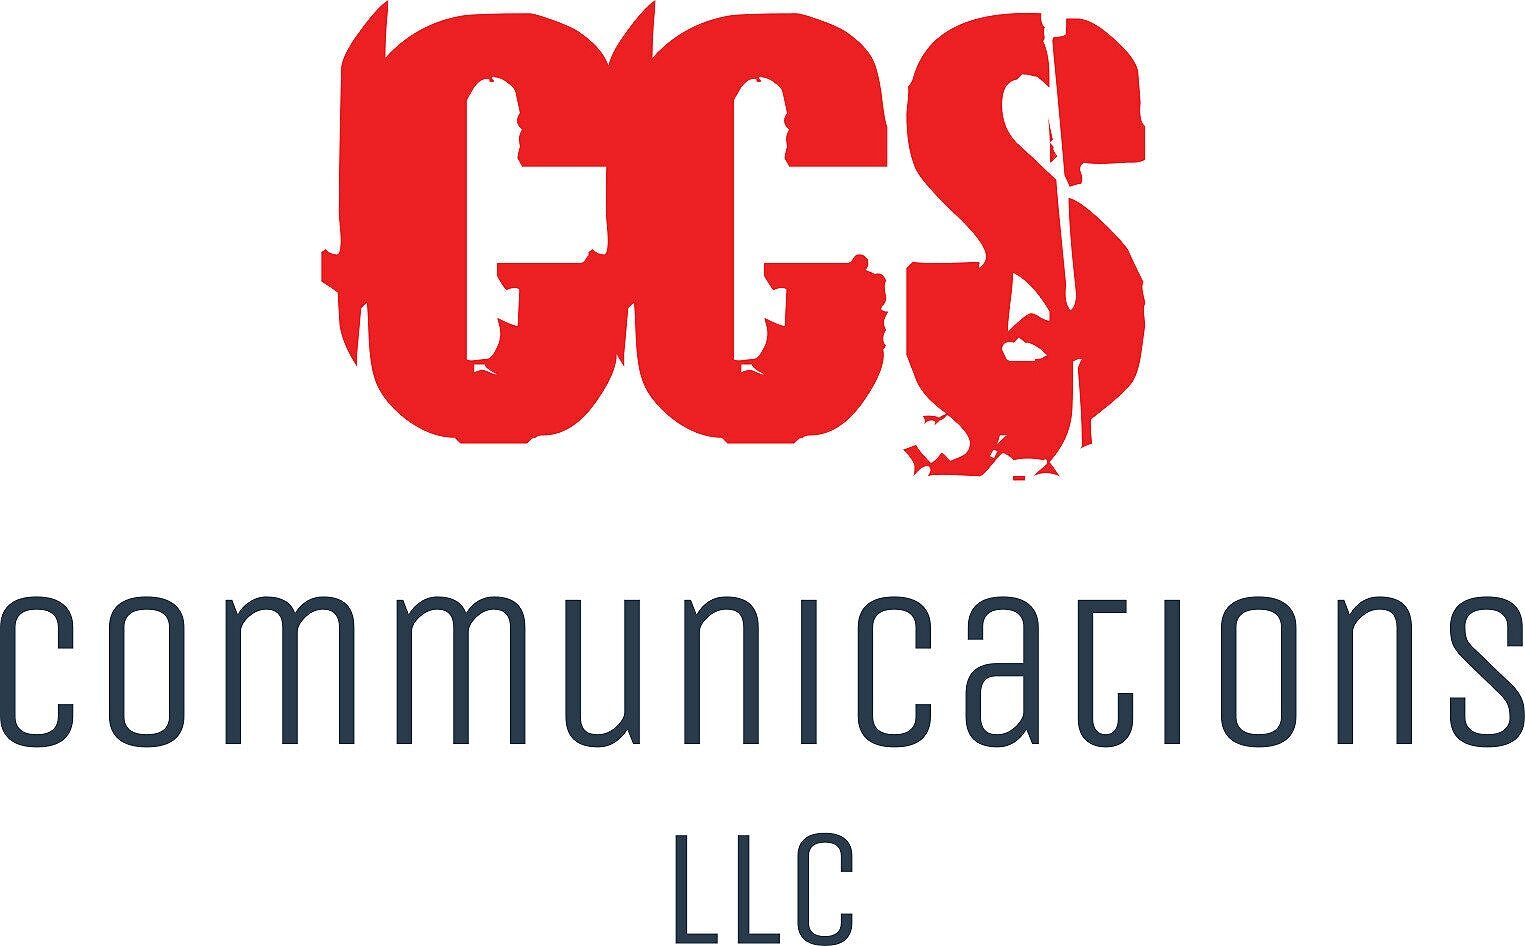 CCS Communications LLC